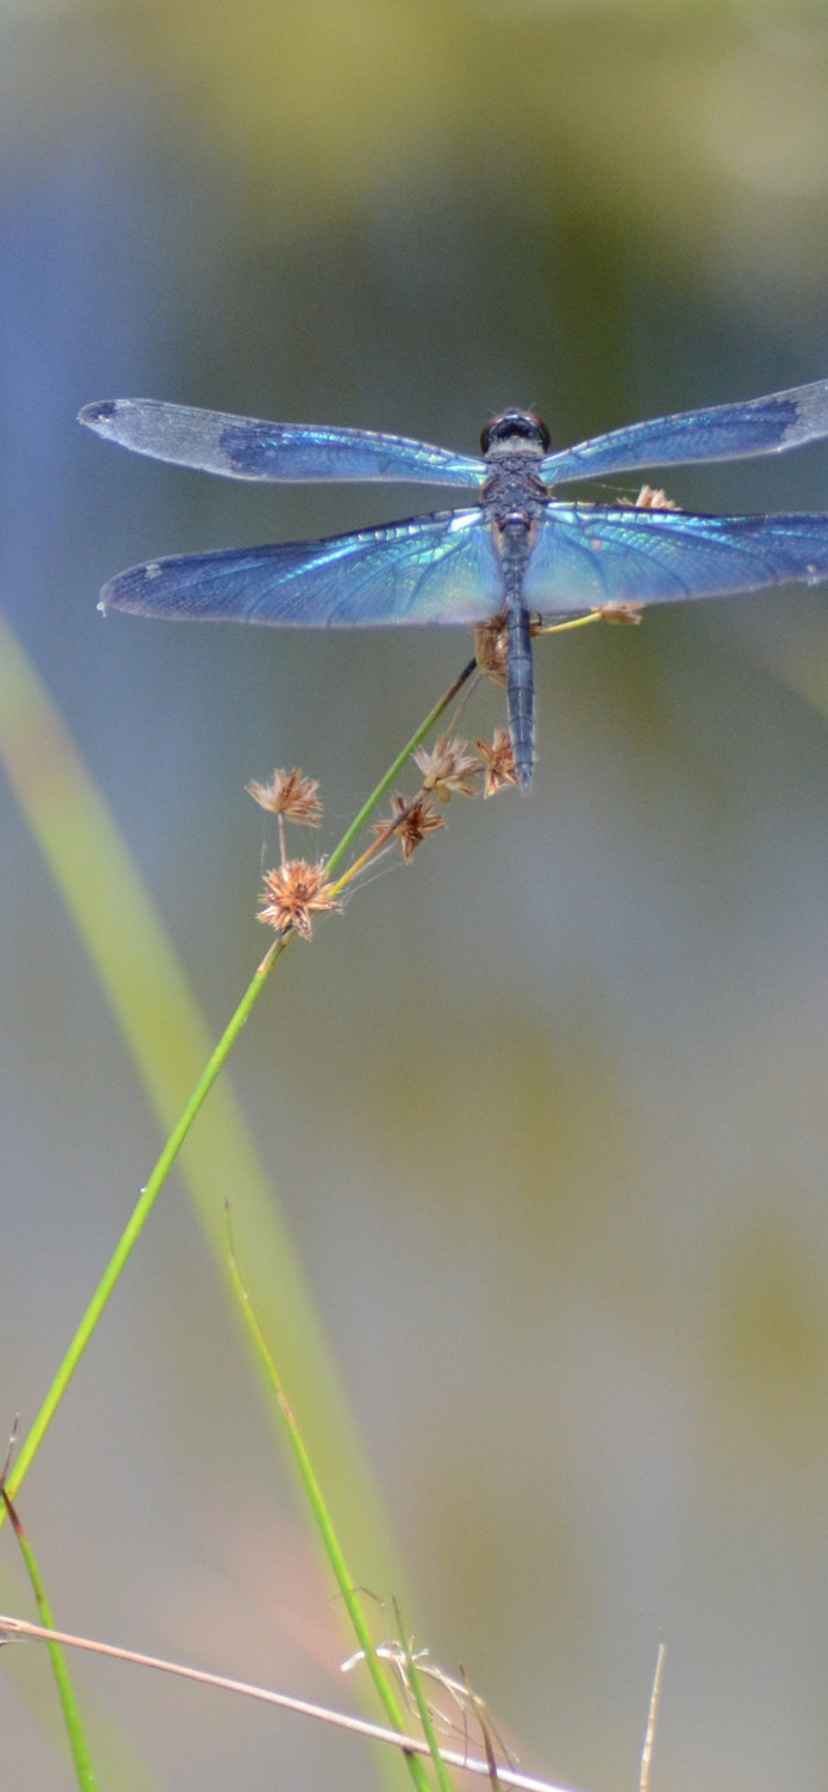 Картинка: Стрекоза, голубая, травинка, крылья, тельце, сидит, растение